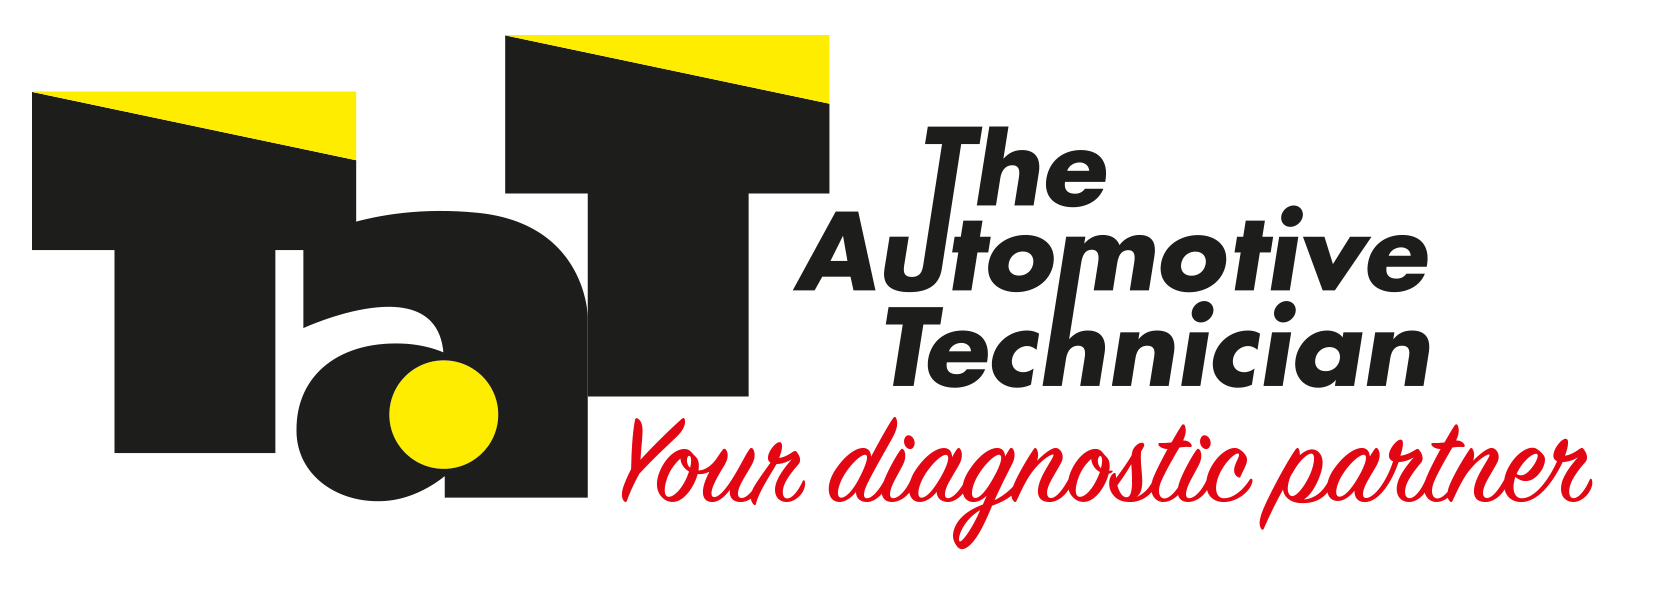 Automotive Technician Logo - The Automotive Technician - Home